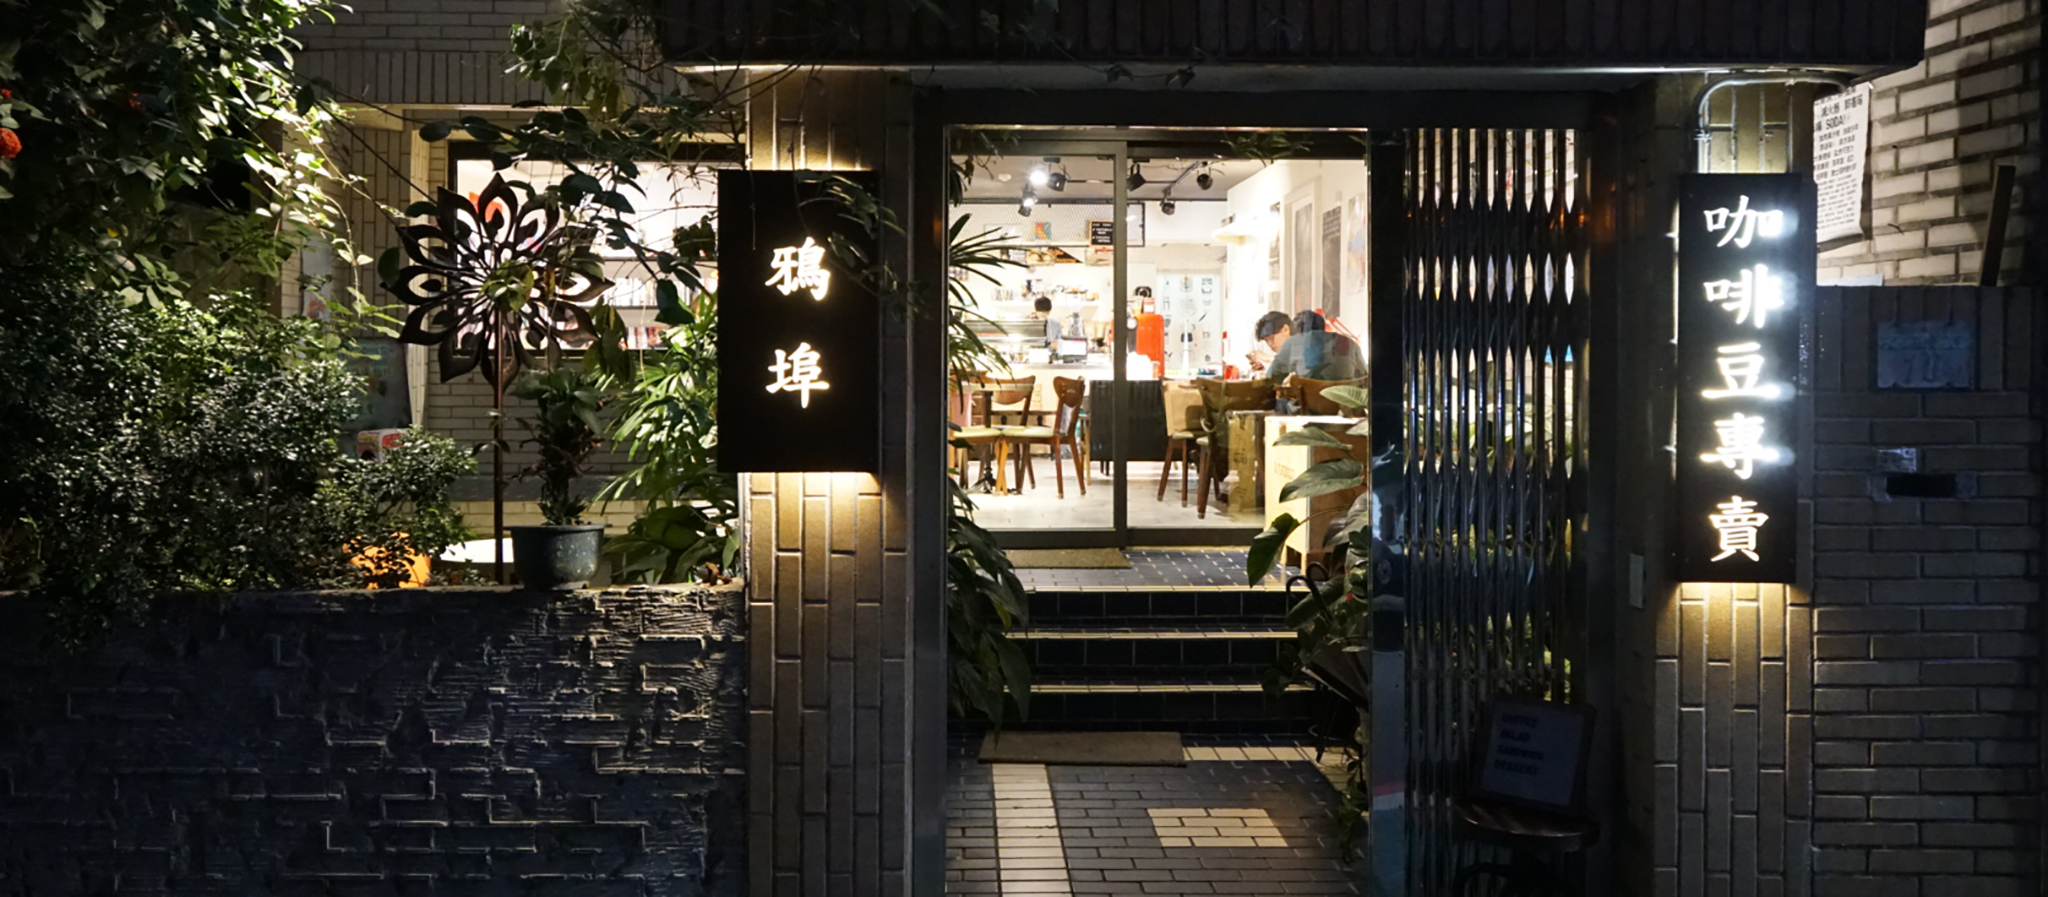 【永康街】鴉埠咖啡二號店，永康街裡鬧中取靜的小夜貓咖啡廳